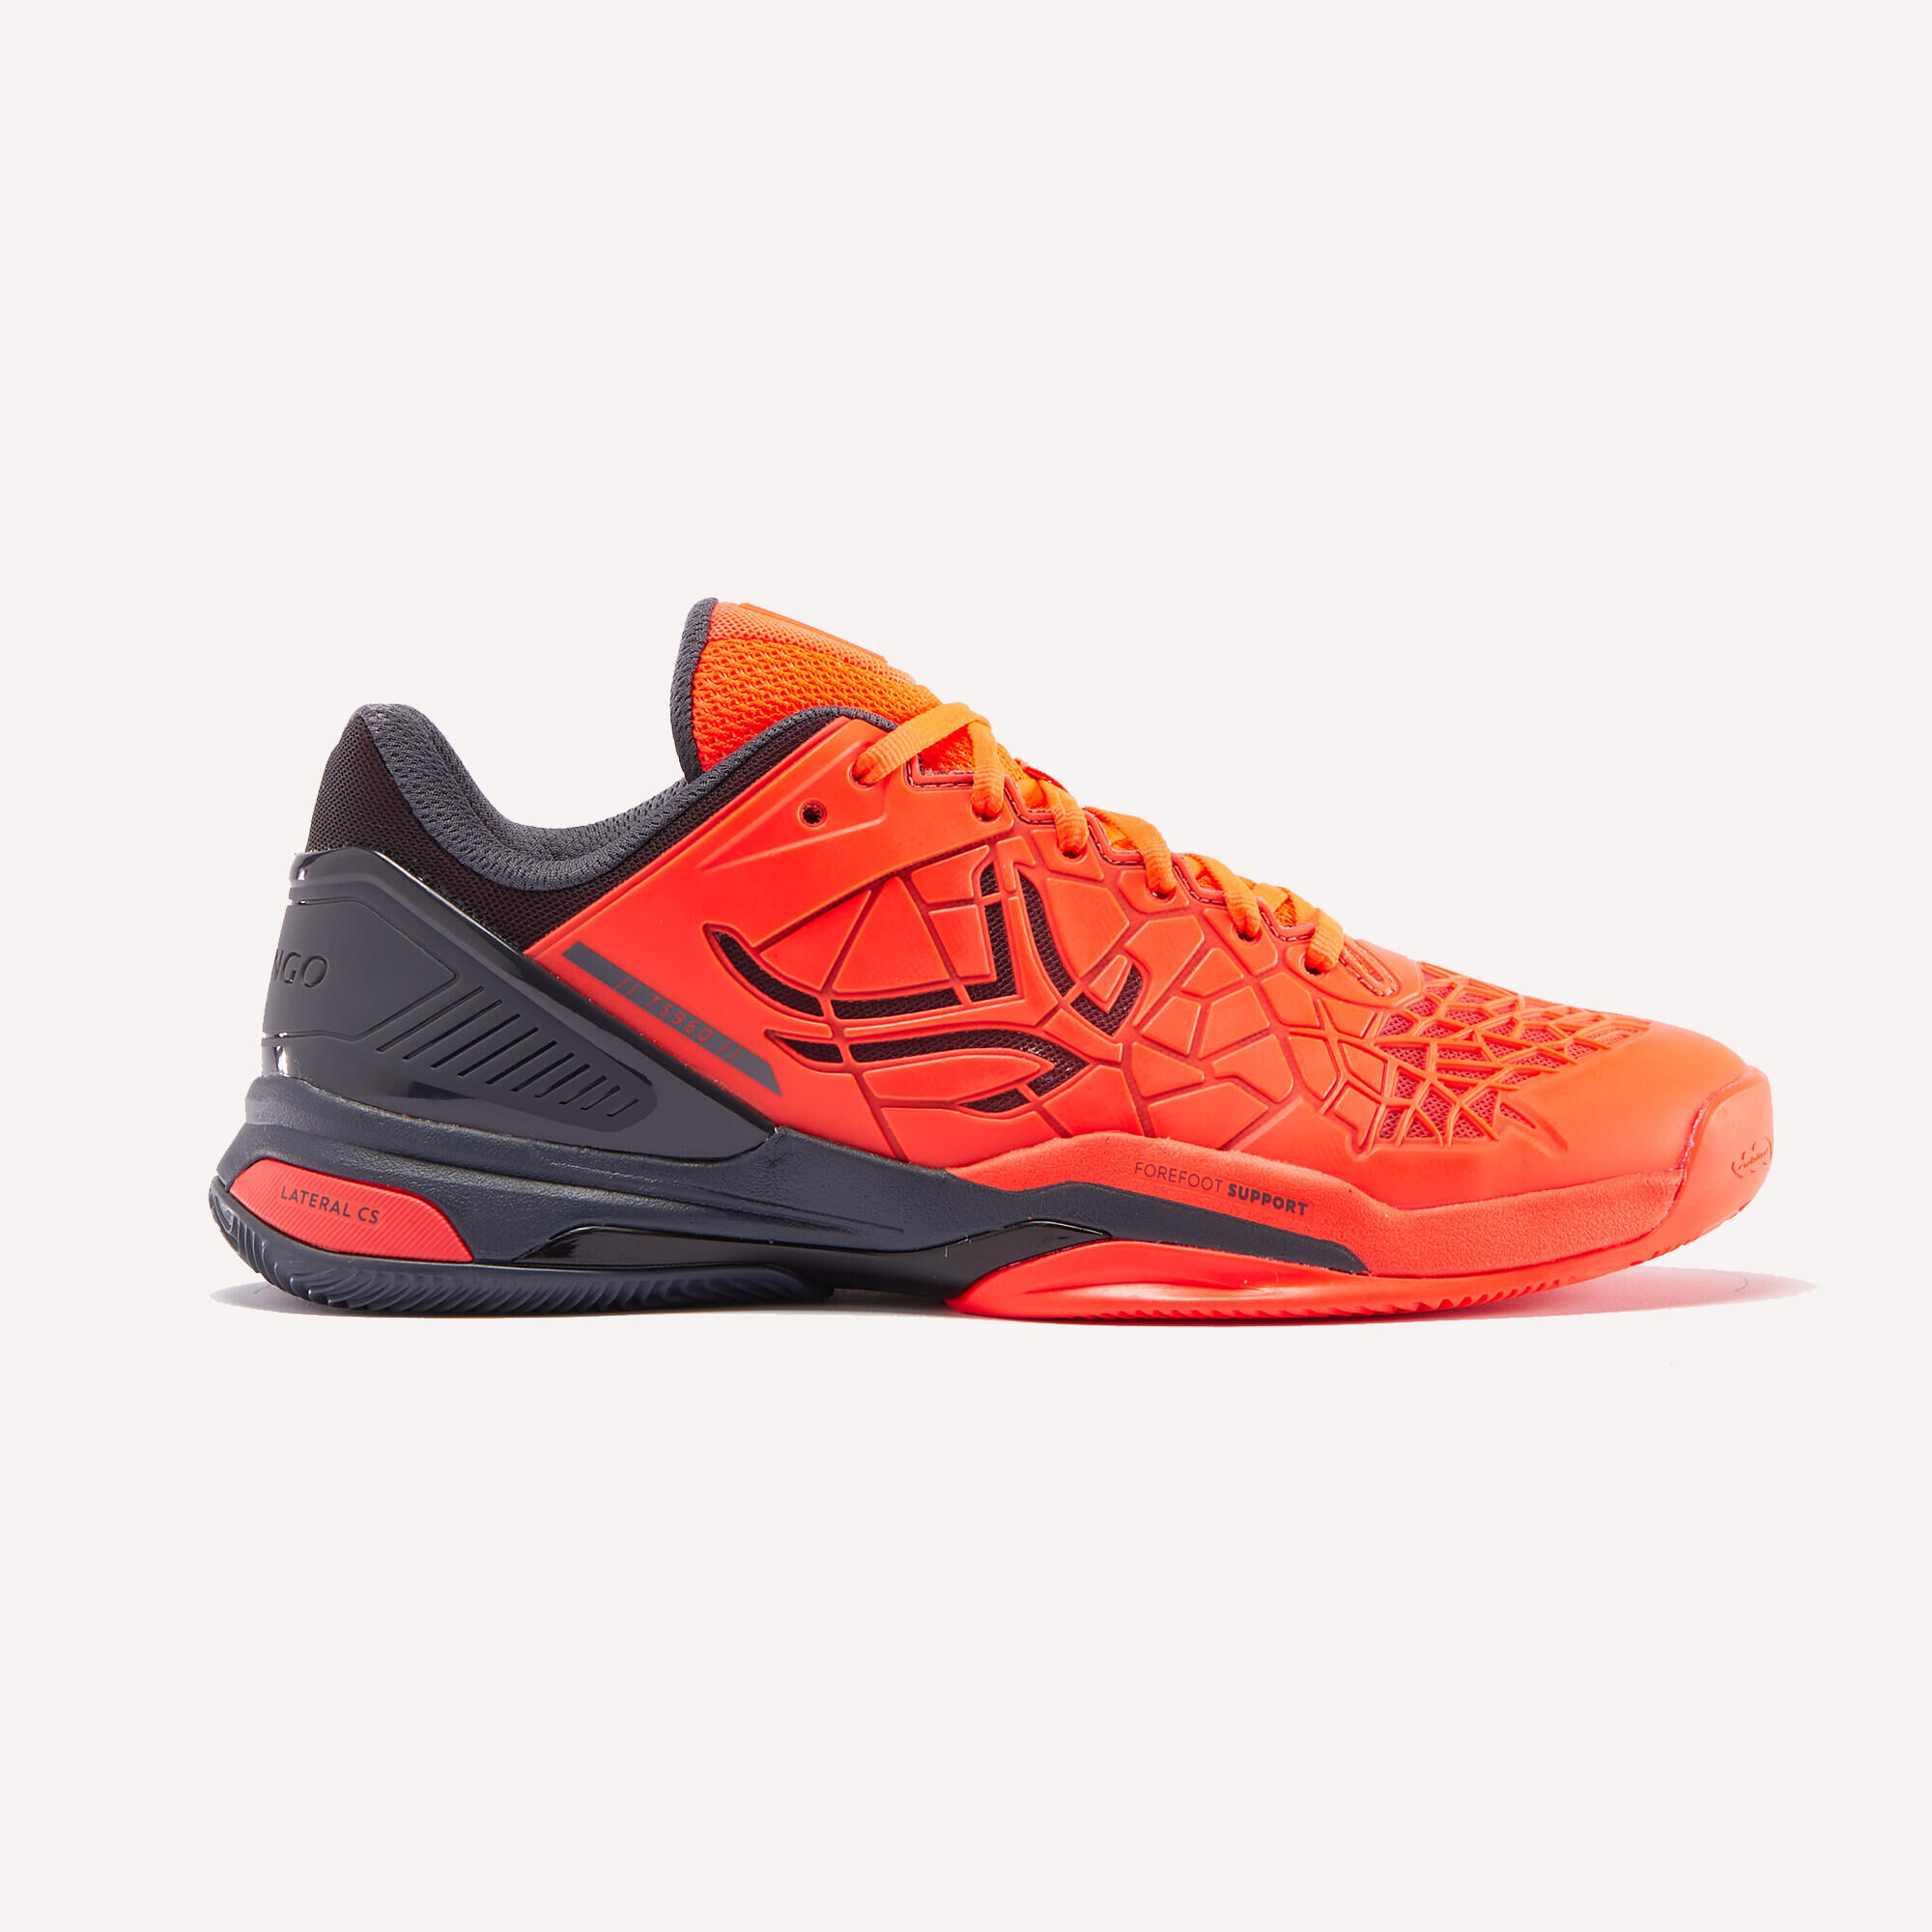 ARTENGO Men's Clay Court Tennis Shoes Strong Pro - Orange